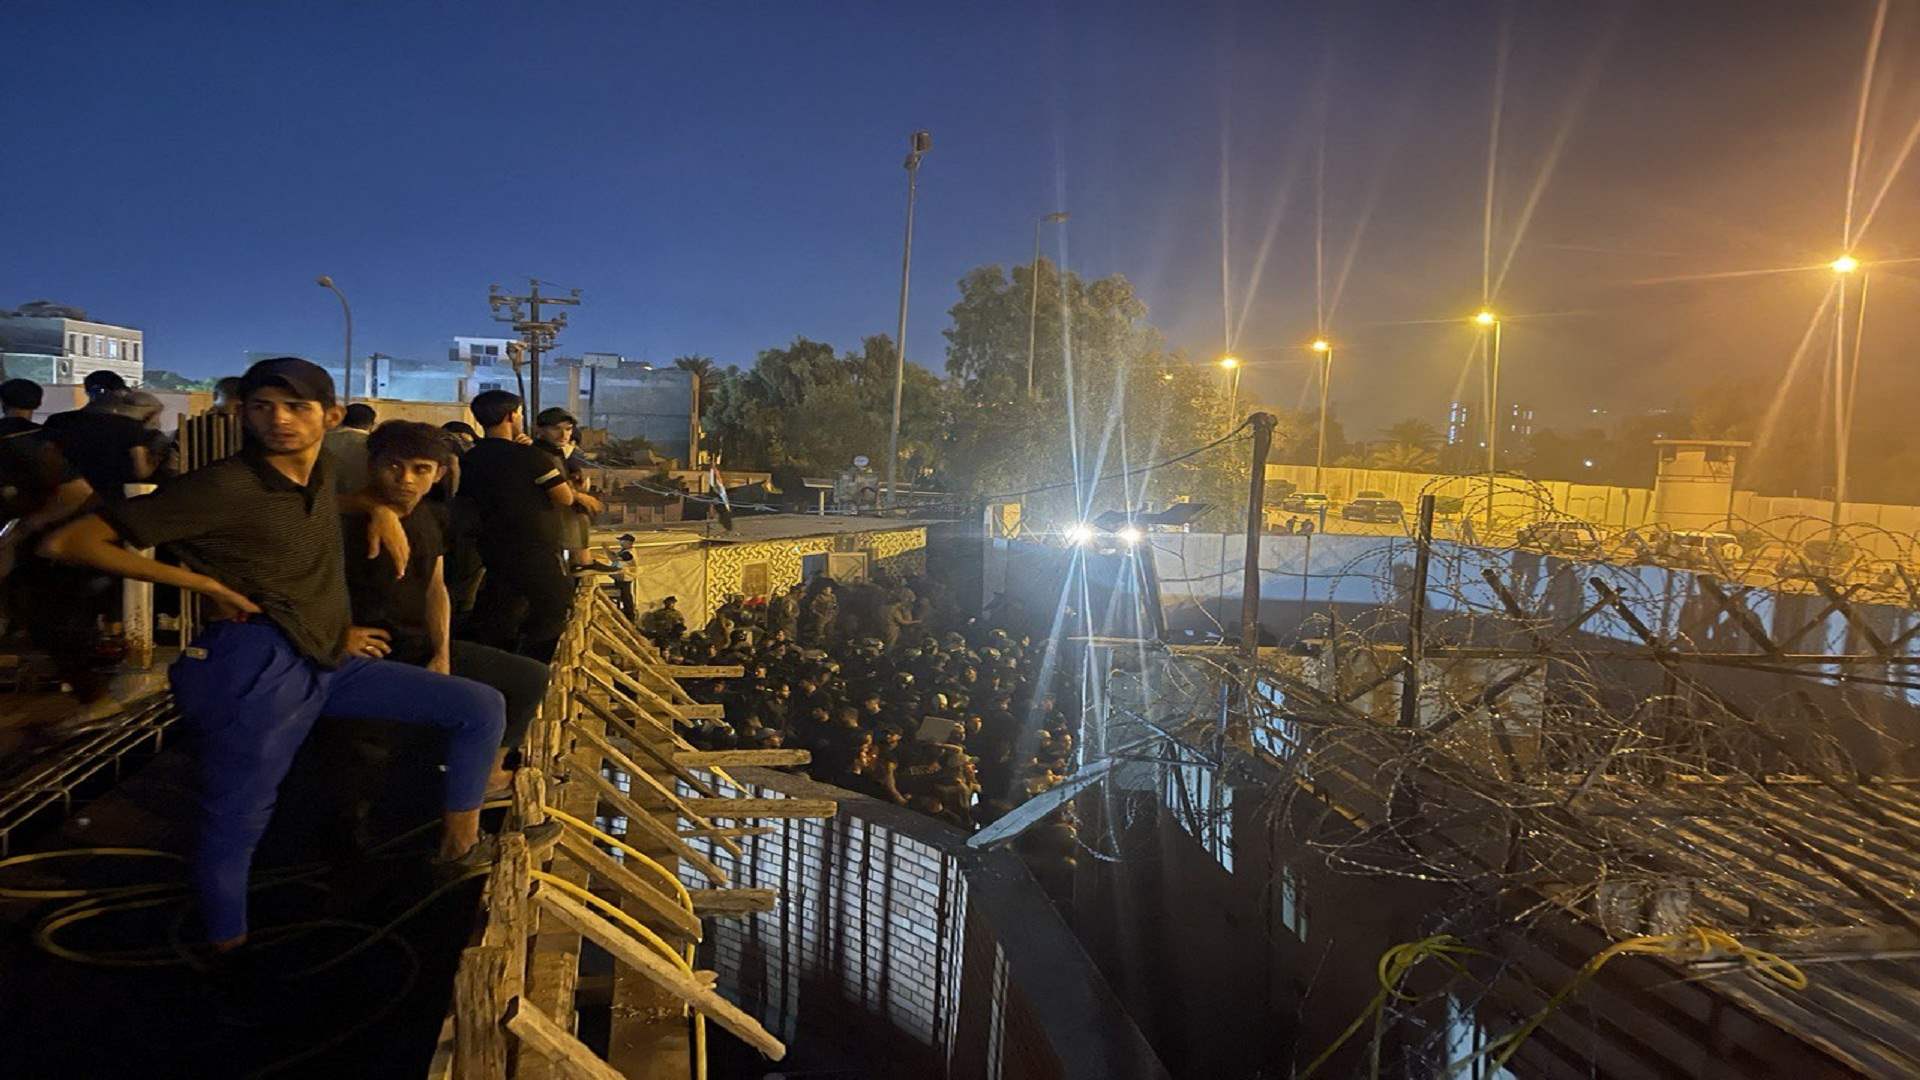 القوات الأمنية العراقية تستخدم خراطيم المياه لتفريق المتظاهرين من أمام السفارة السويدية في بغداد